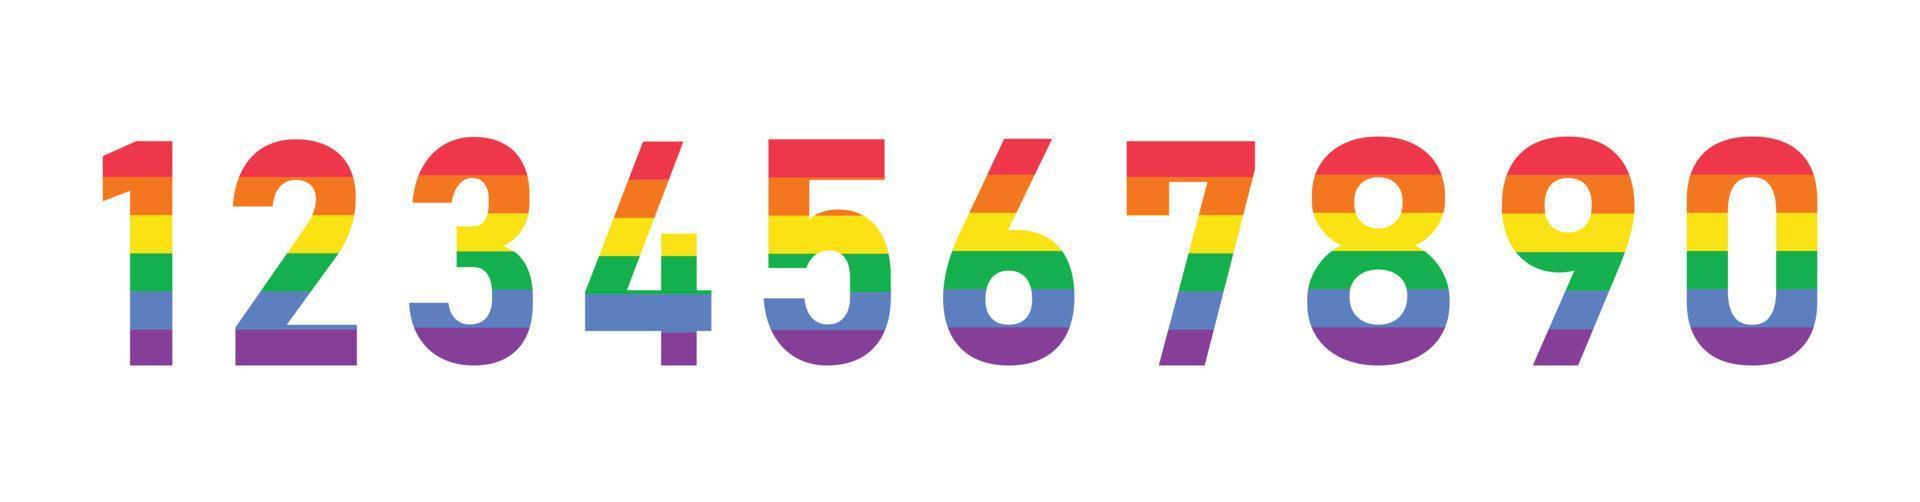 LGBT: Không giới hạn giới tính, màu da, địa chỉ và tình yêu! Hãy tìm hiểu hình ảnh này và cùng nhau ủng hộ sự đa dạng và tôn trọng sự khác biệt trong tình yêu! 